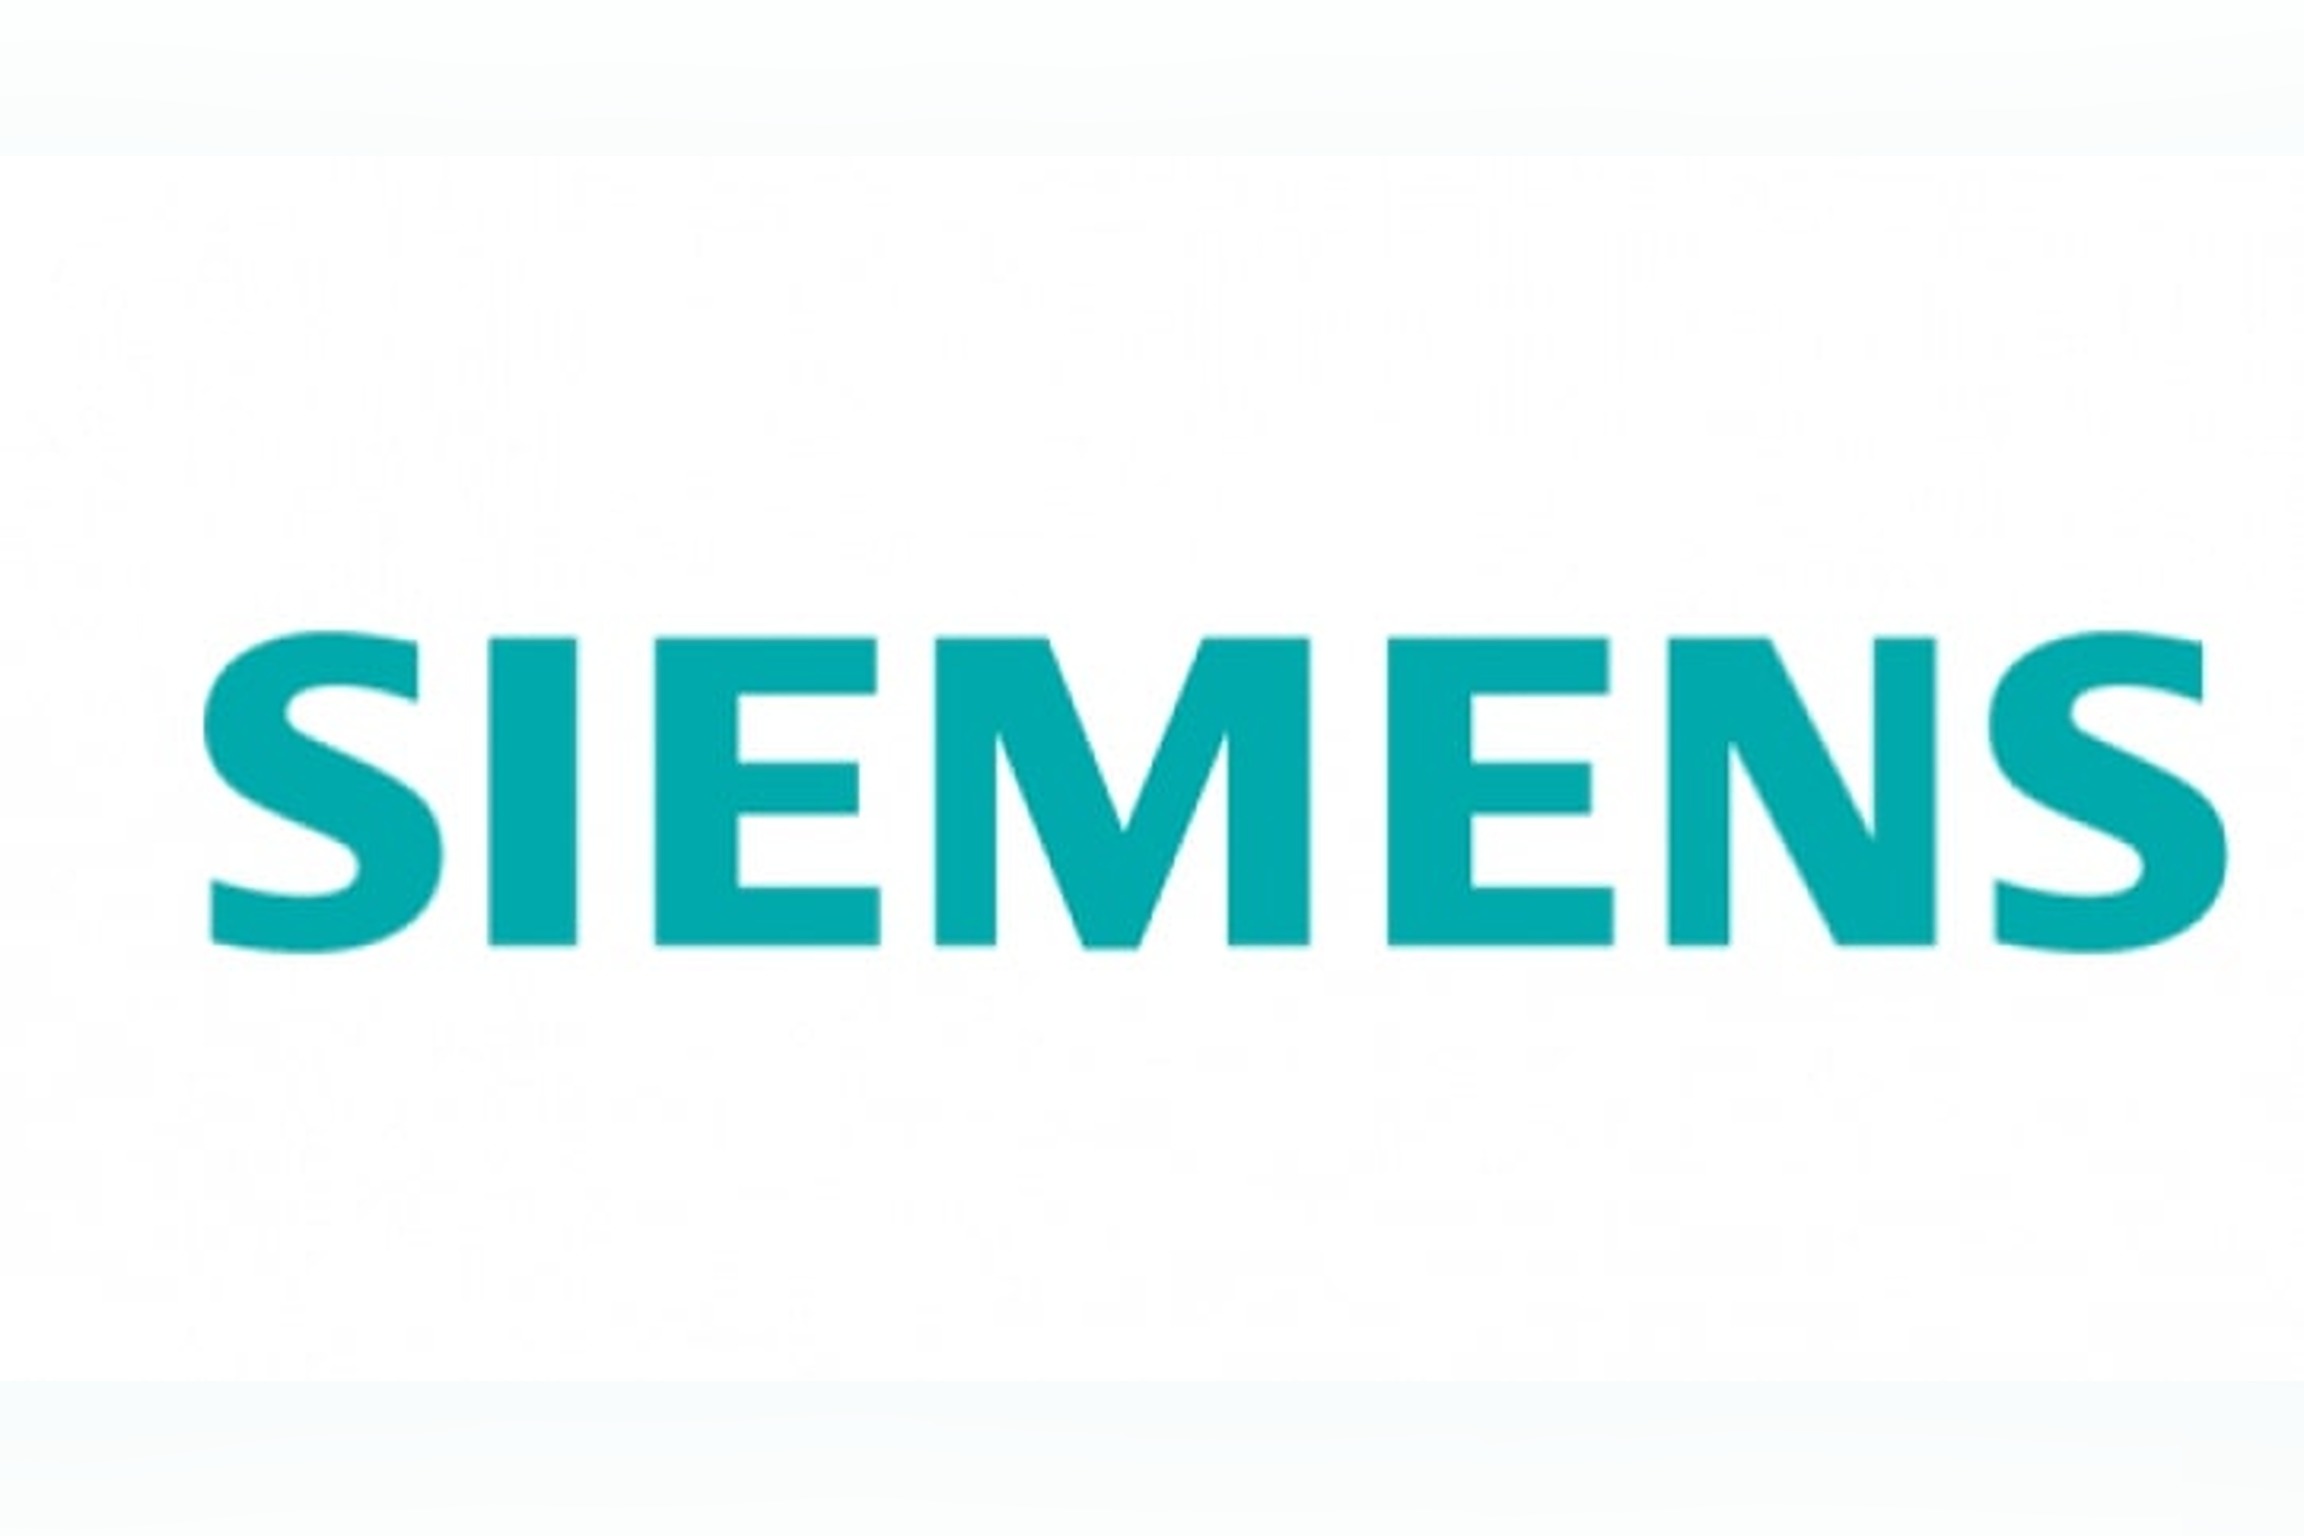 Logo de la marque Siemens